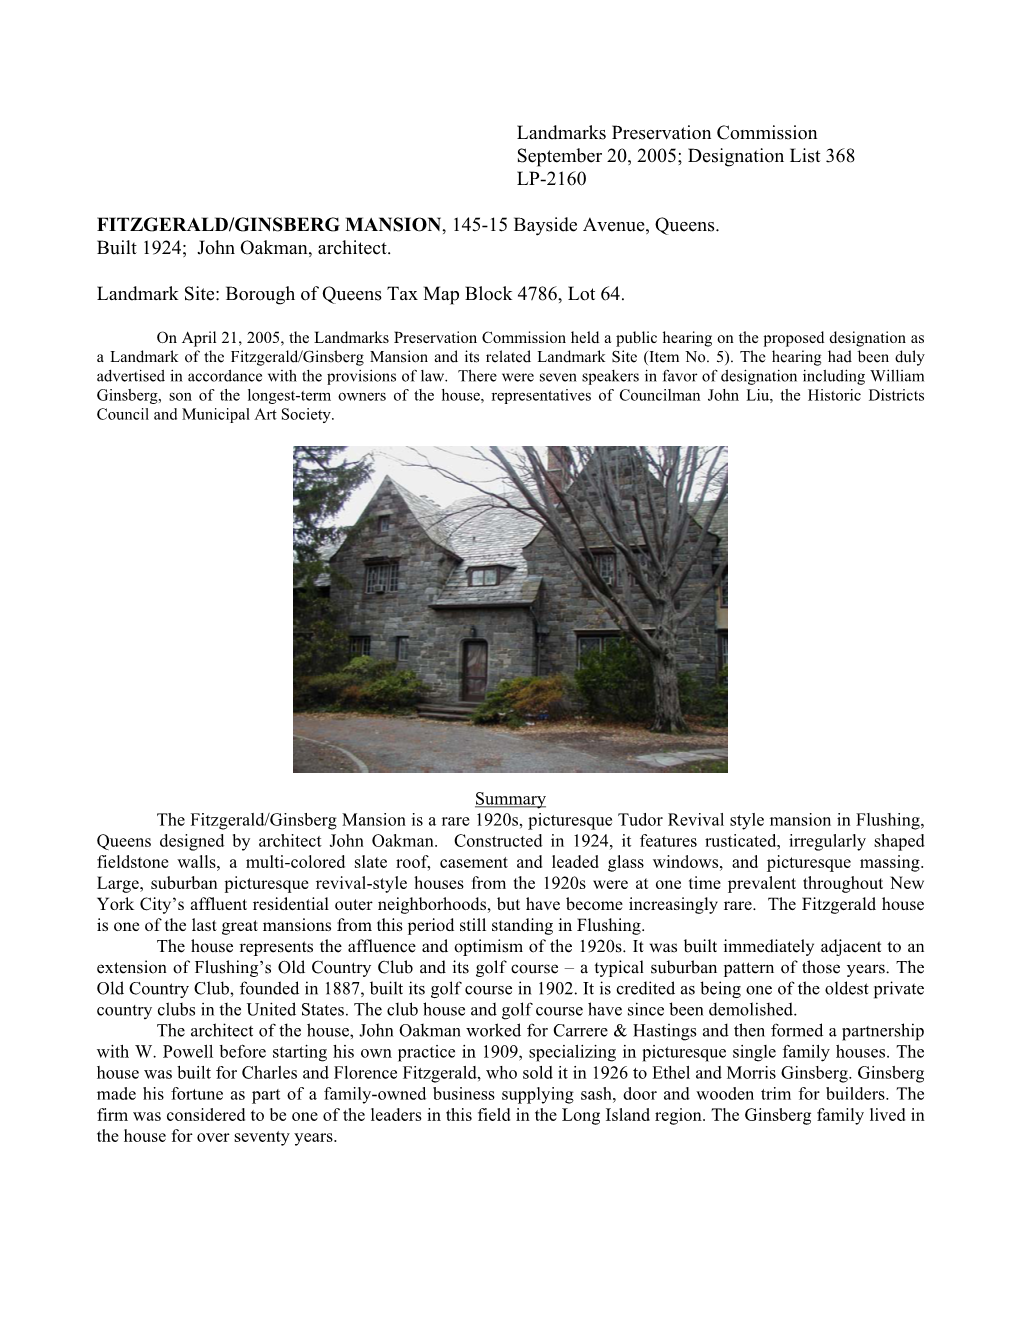 Landmarks Preservation Commission September 20, 2005; Designation List 368 LP-2160